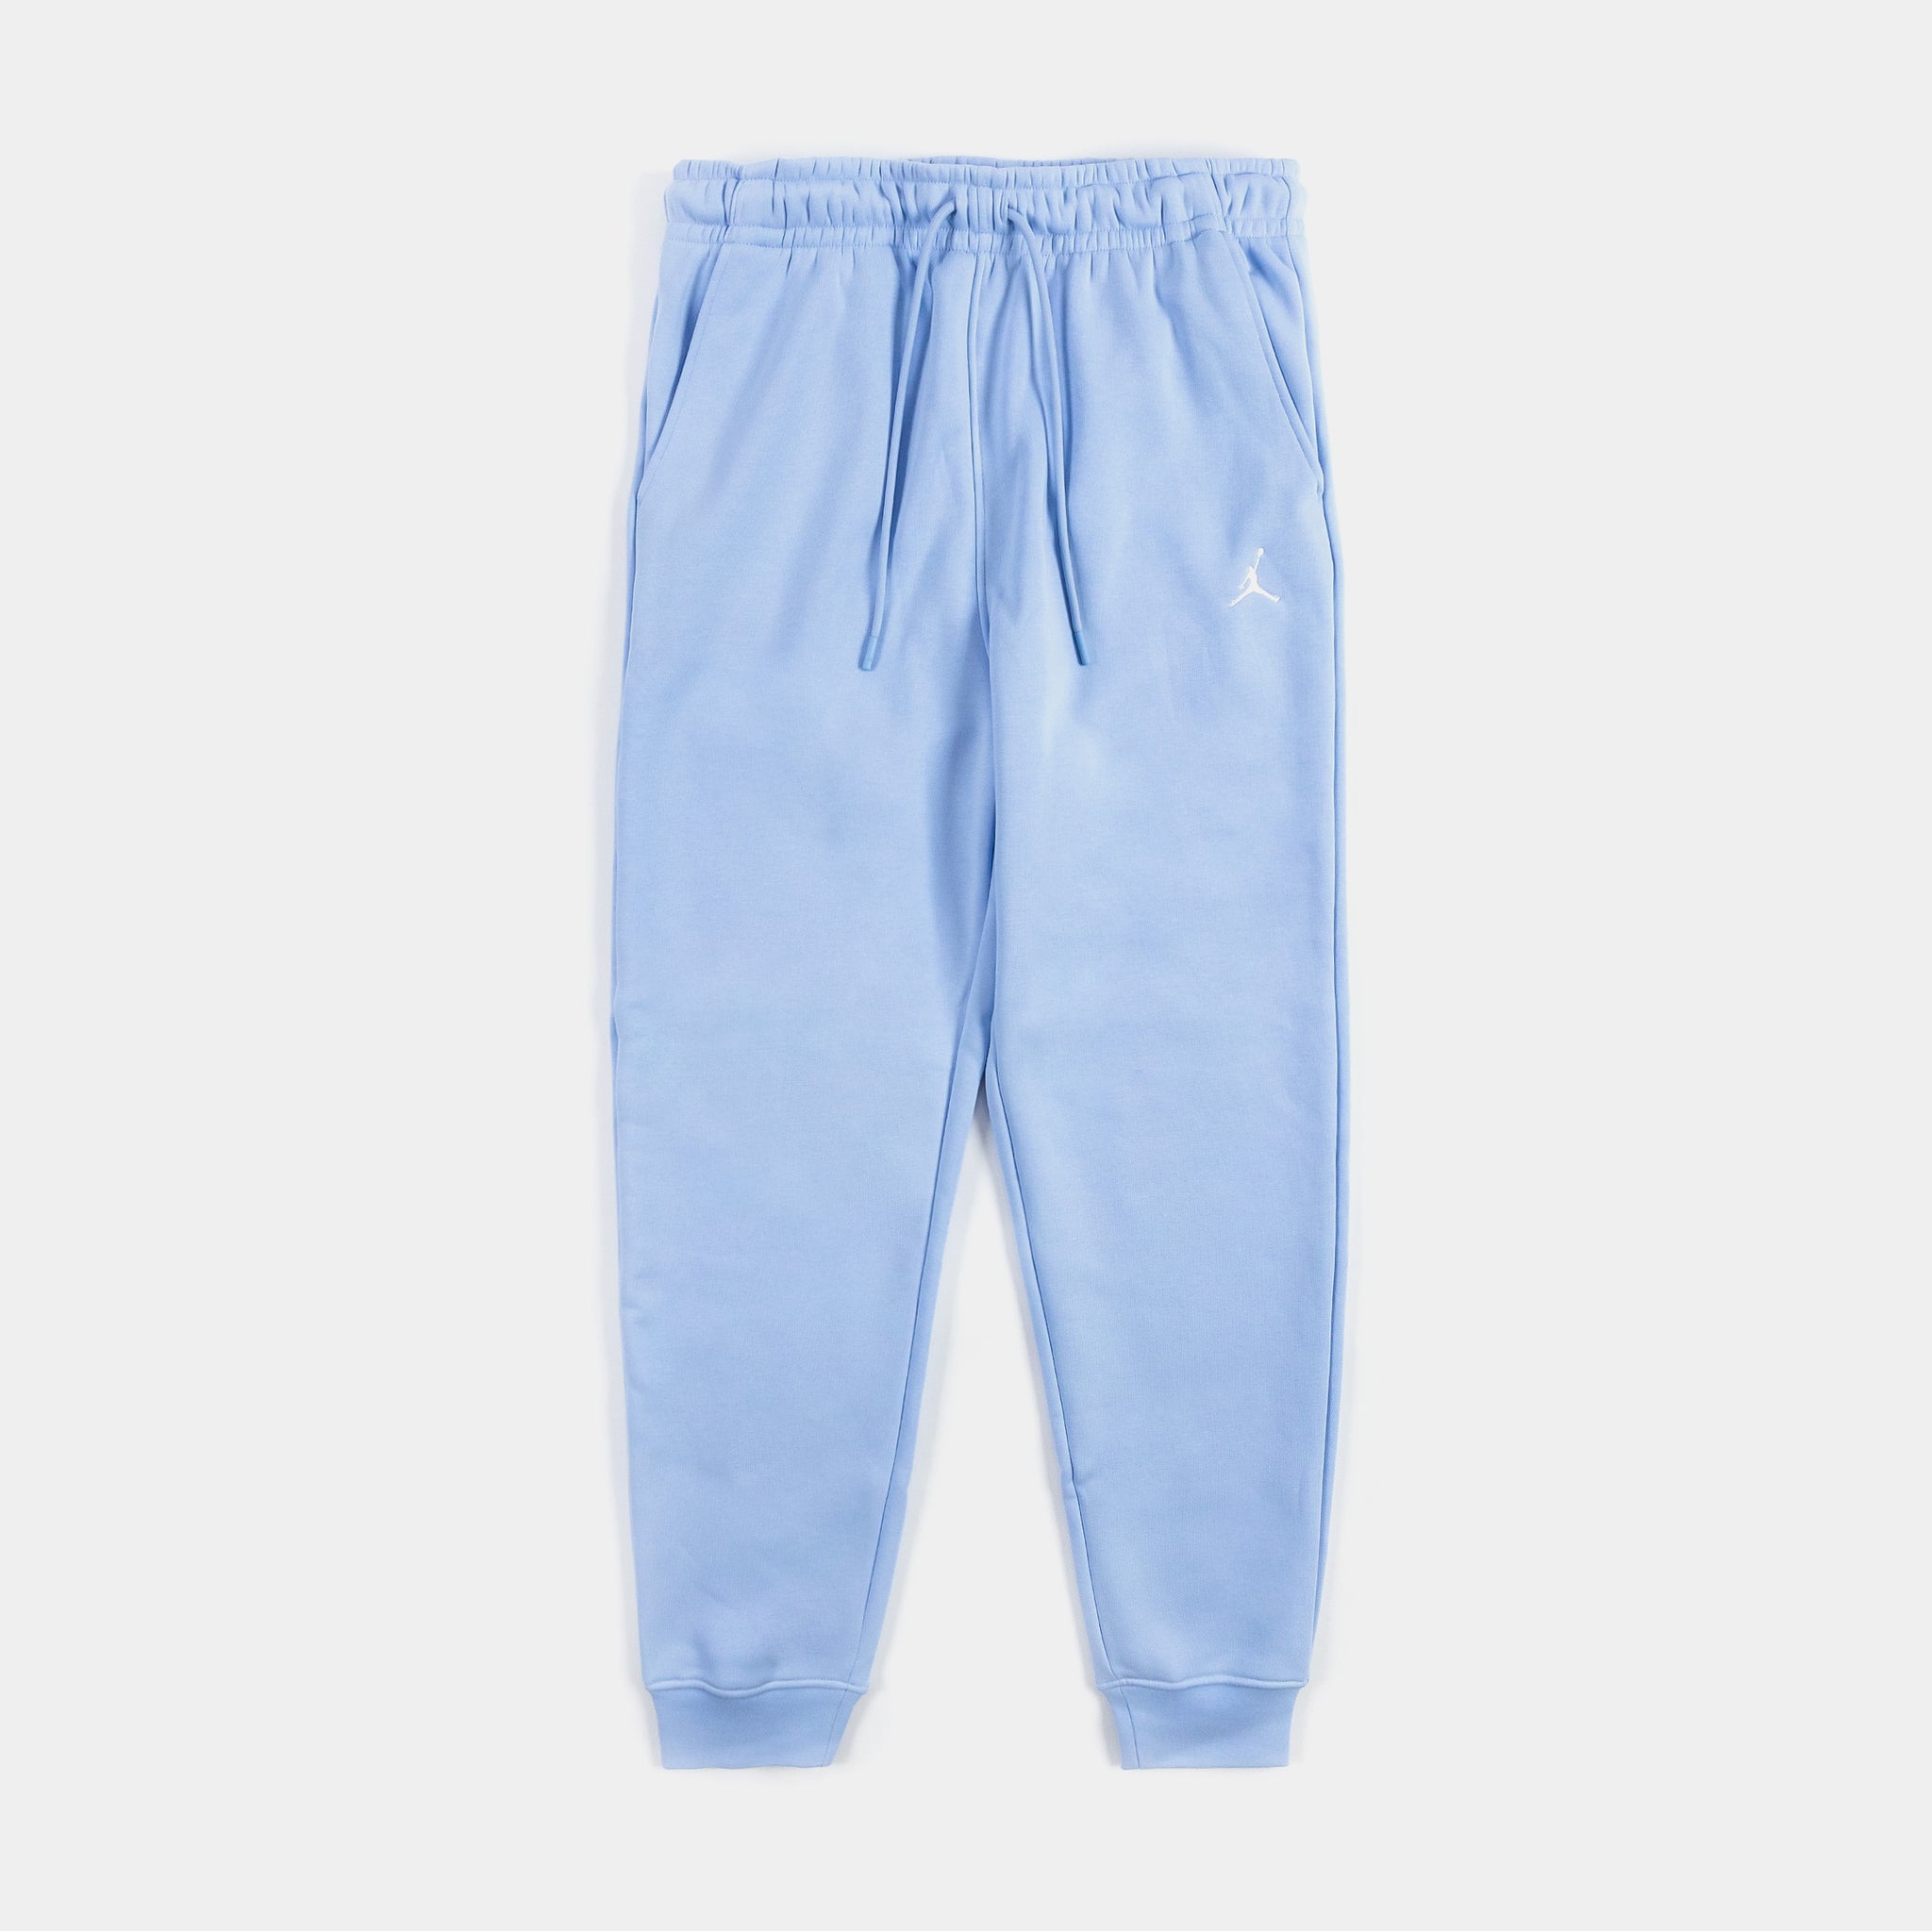 Jordan Pants Mens Essentials Fleece Jogger Blue Palace – FJ7779-425 Shoe